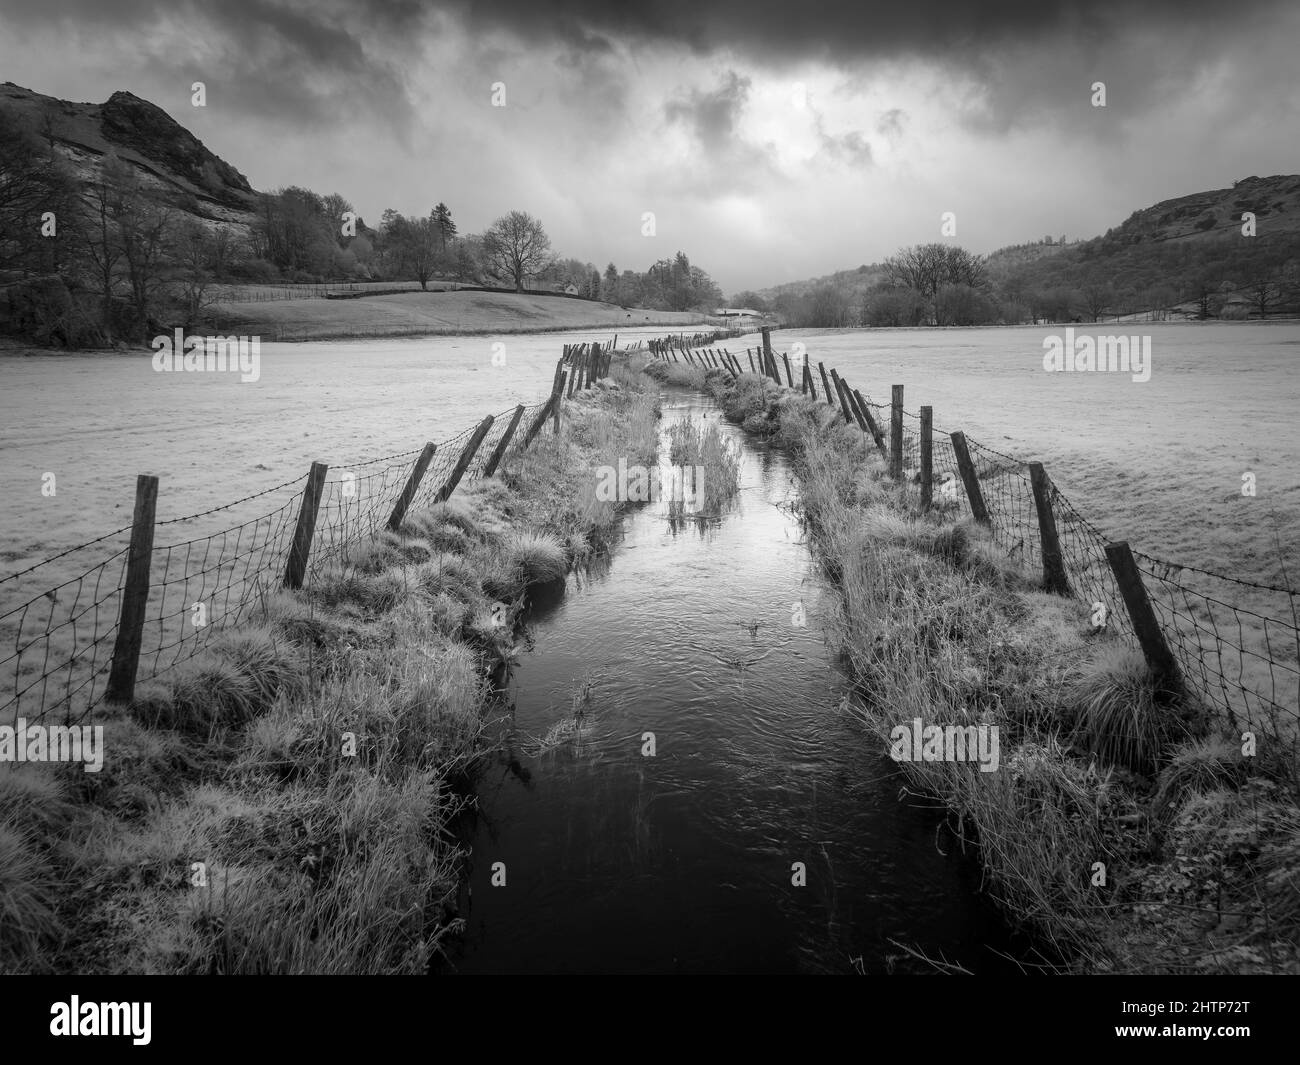 Une image infrarouge du cours d'eau dans la vallée de la Great Langdale, dans le parc national de English Lake District, Cumbria, Angleterre. Banque D'Images